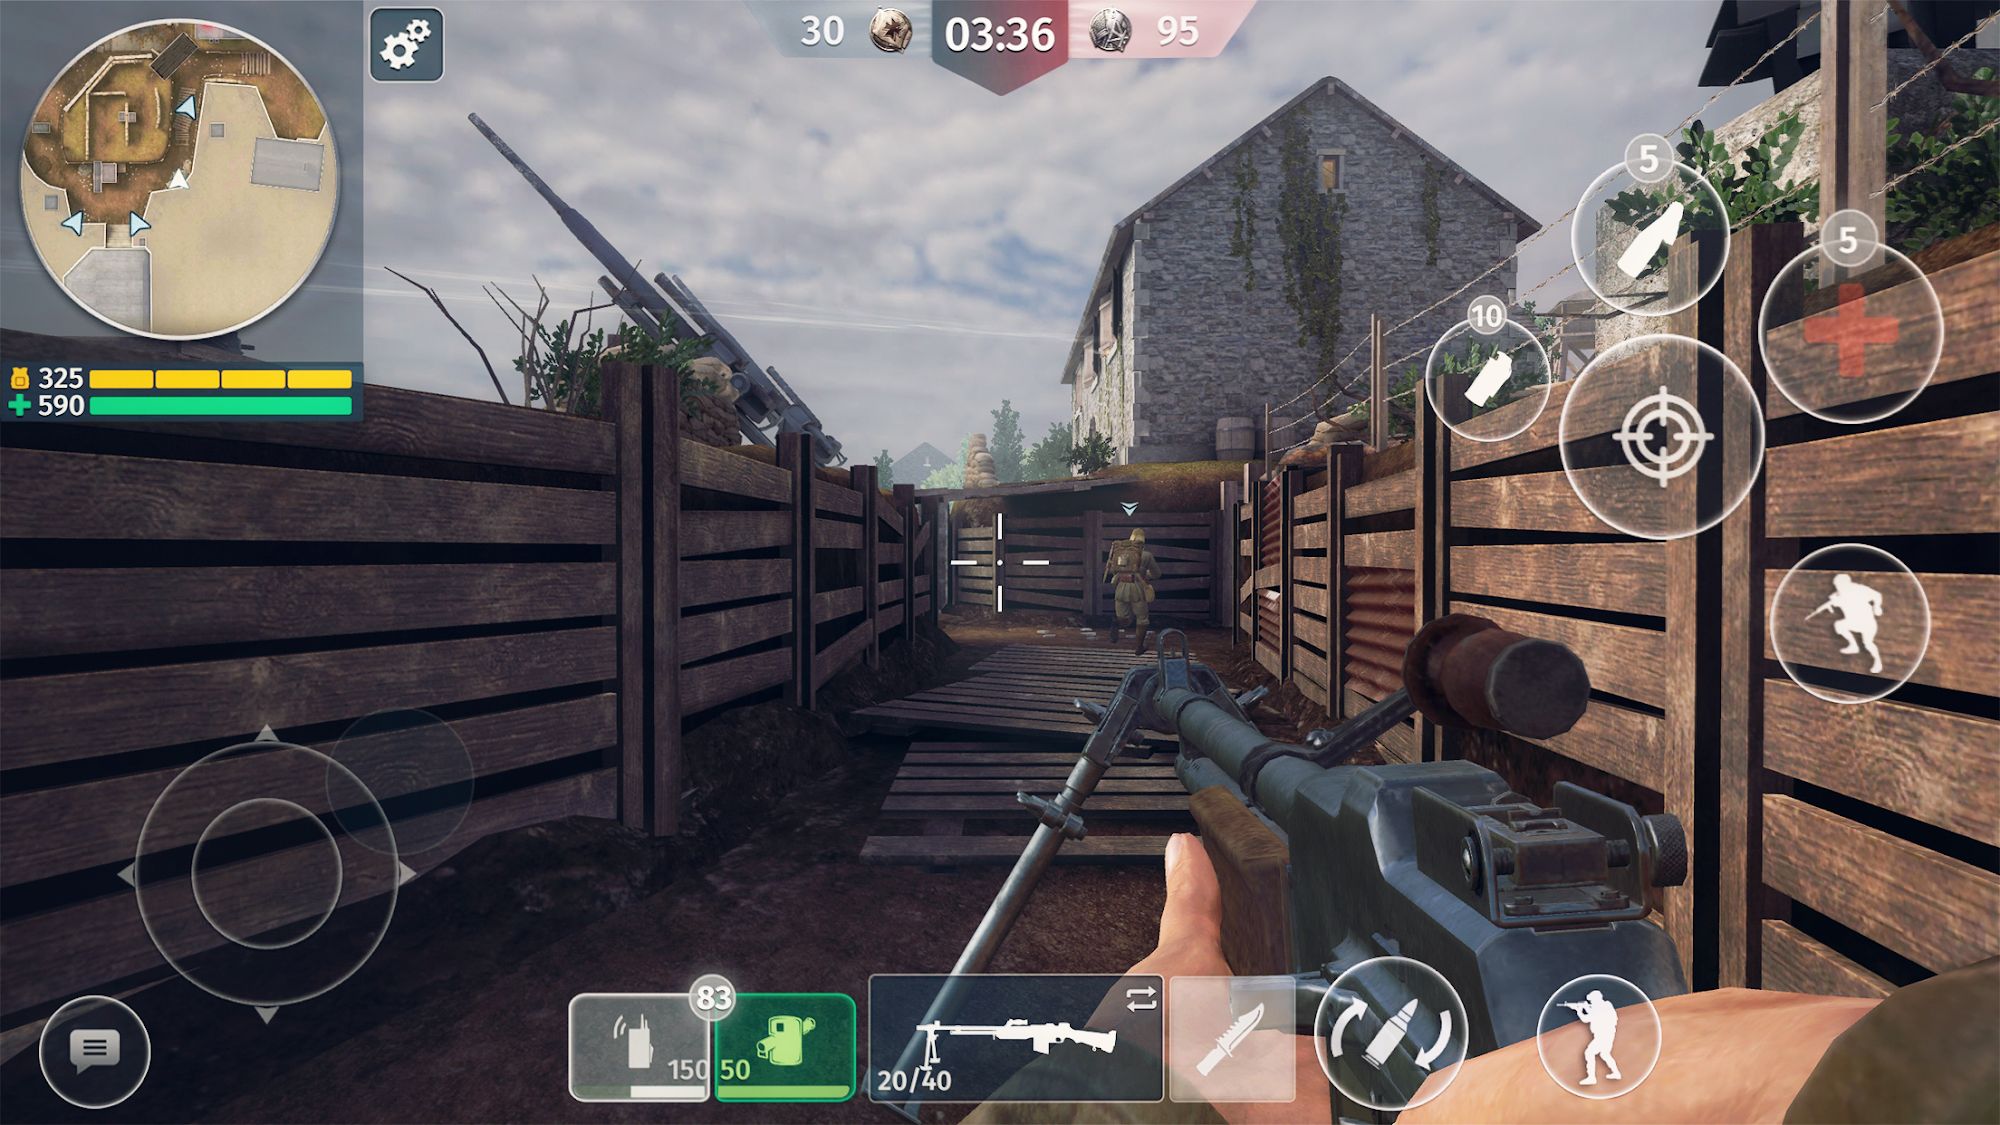 World War 2 - Battle Combat (FPS Games) screenshot 1